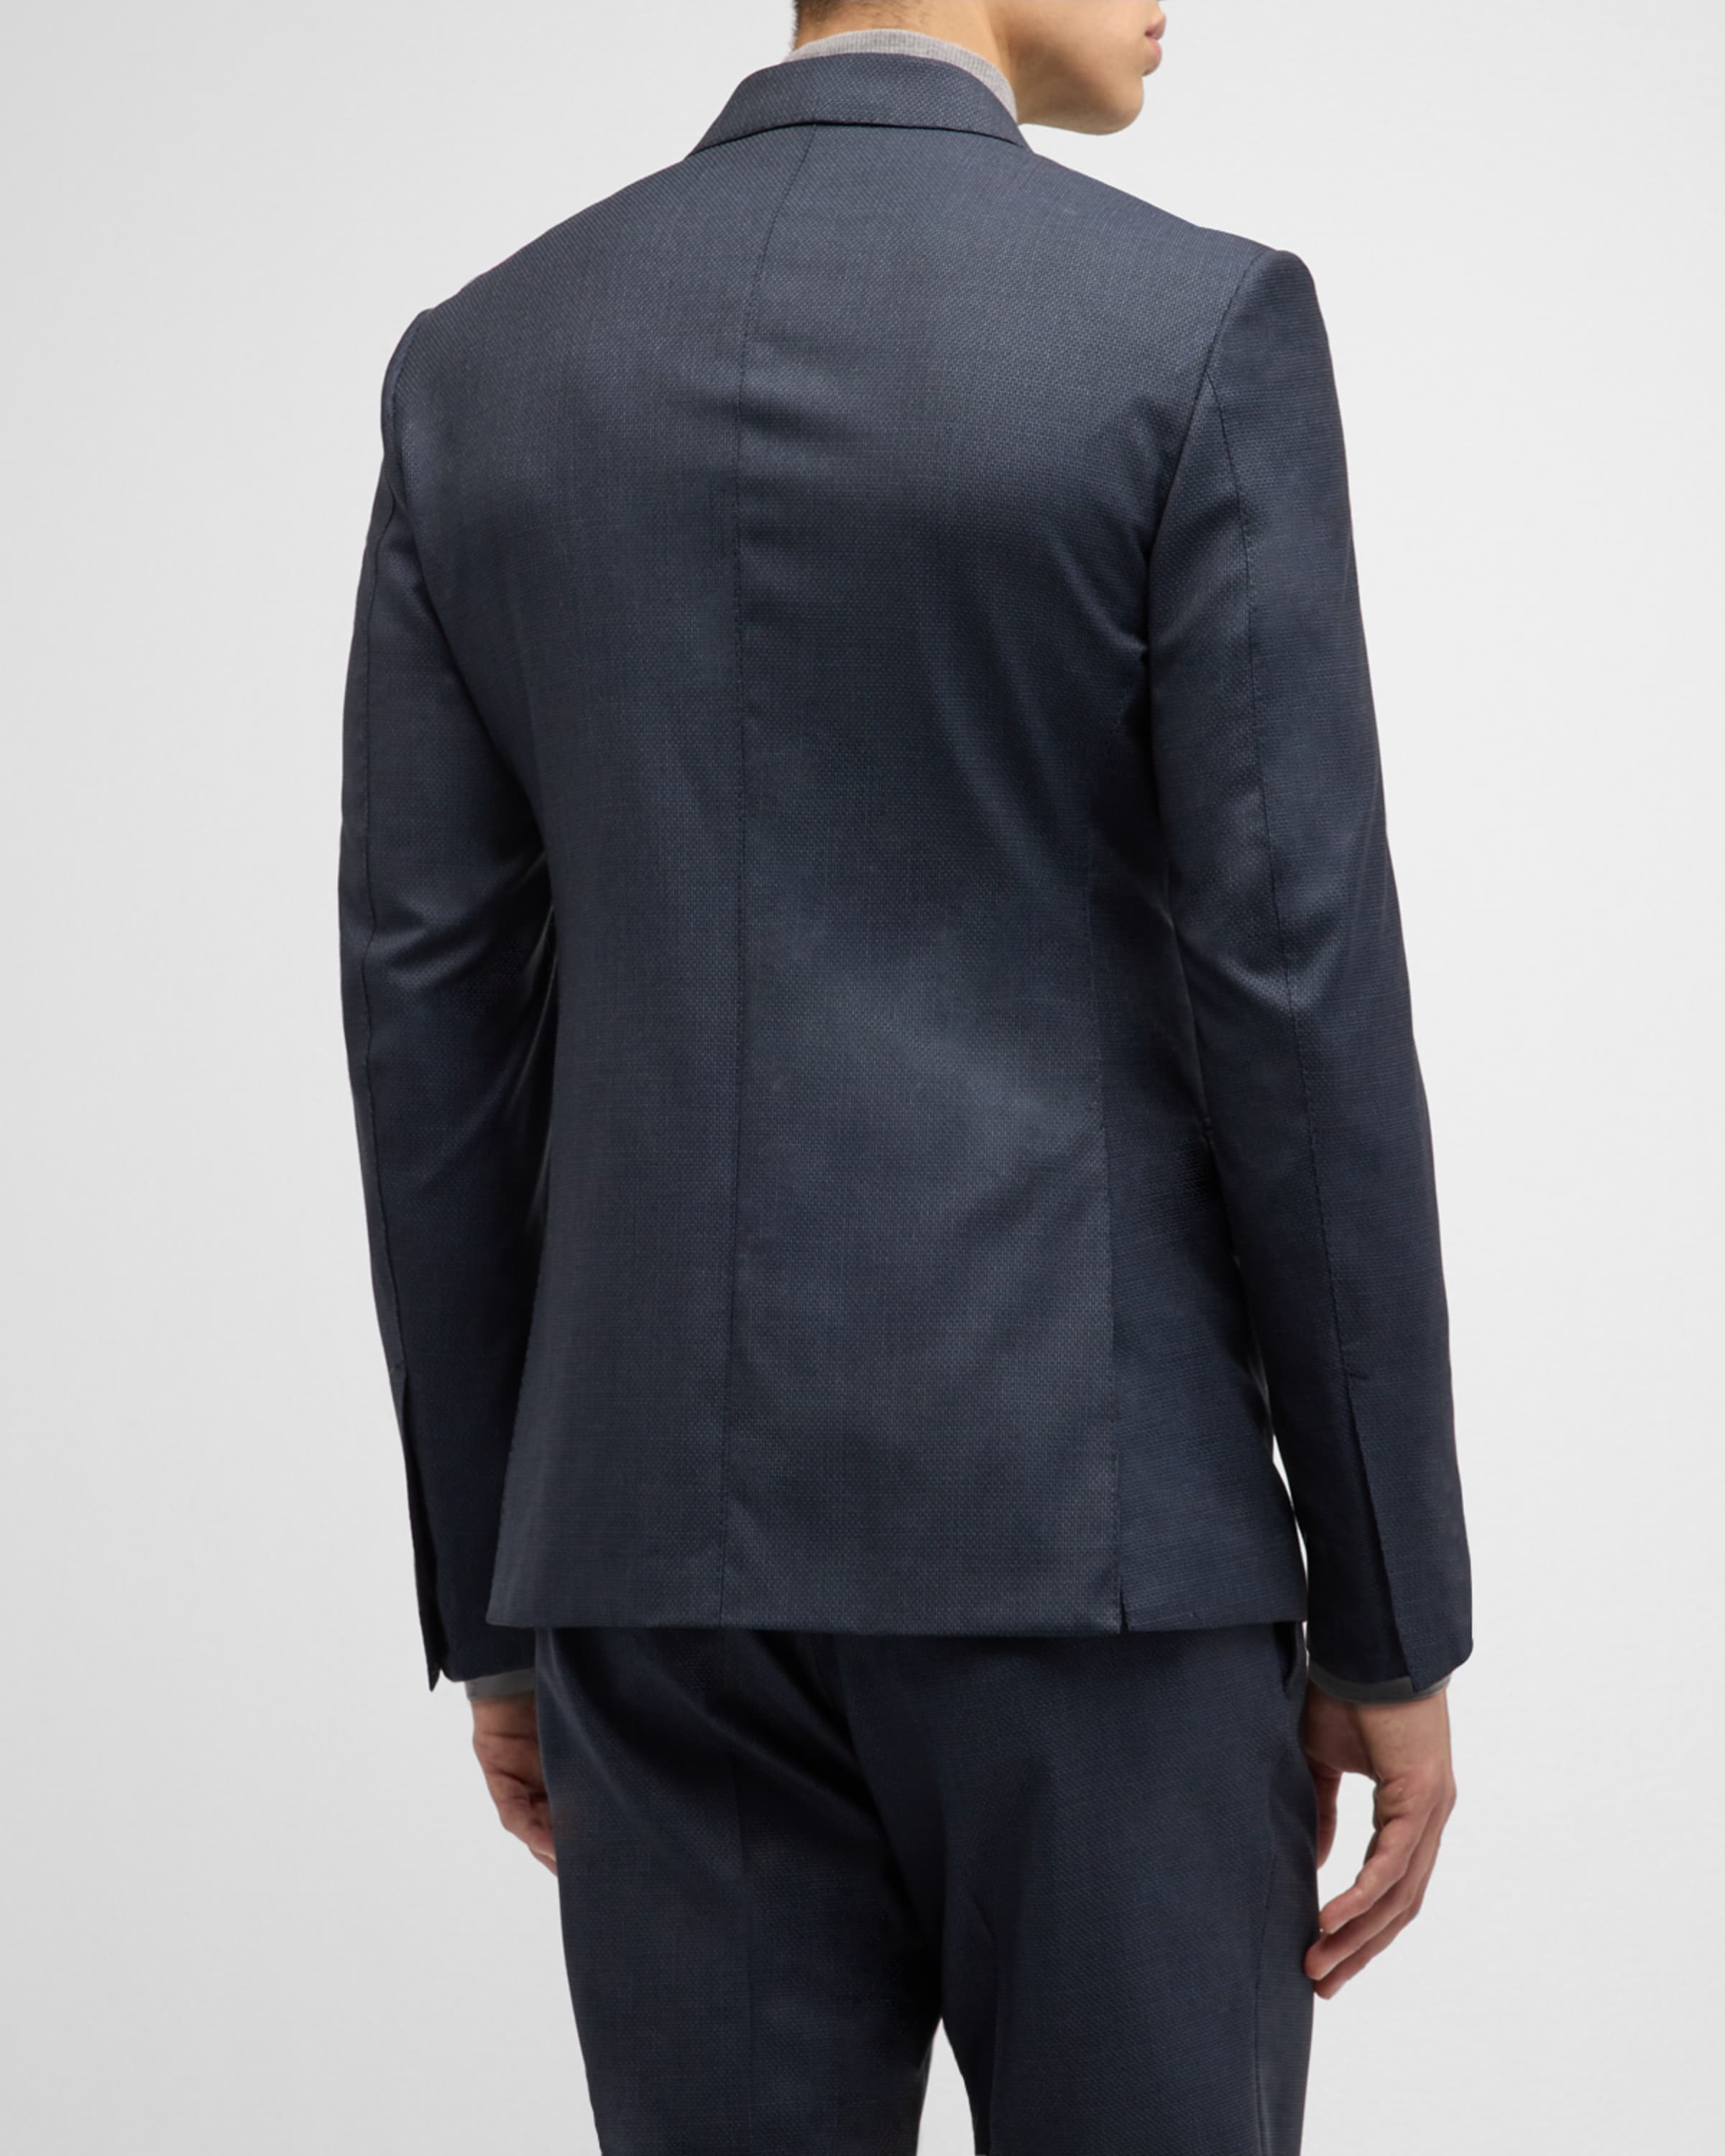 Men's Shelton Micro-Hopsack Suit - 5